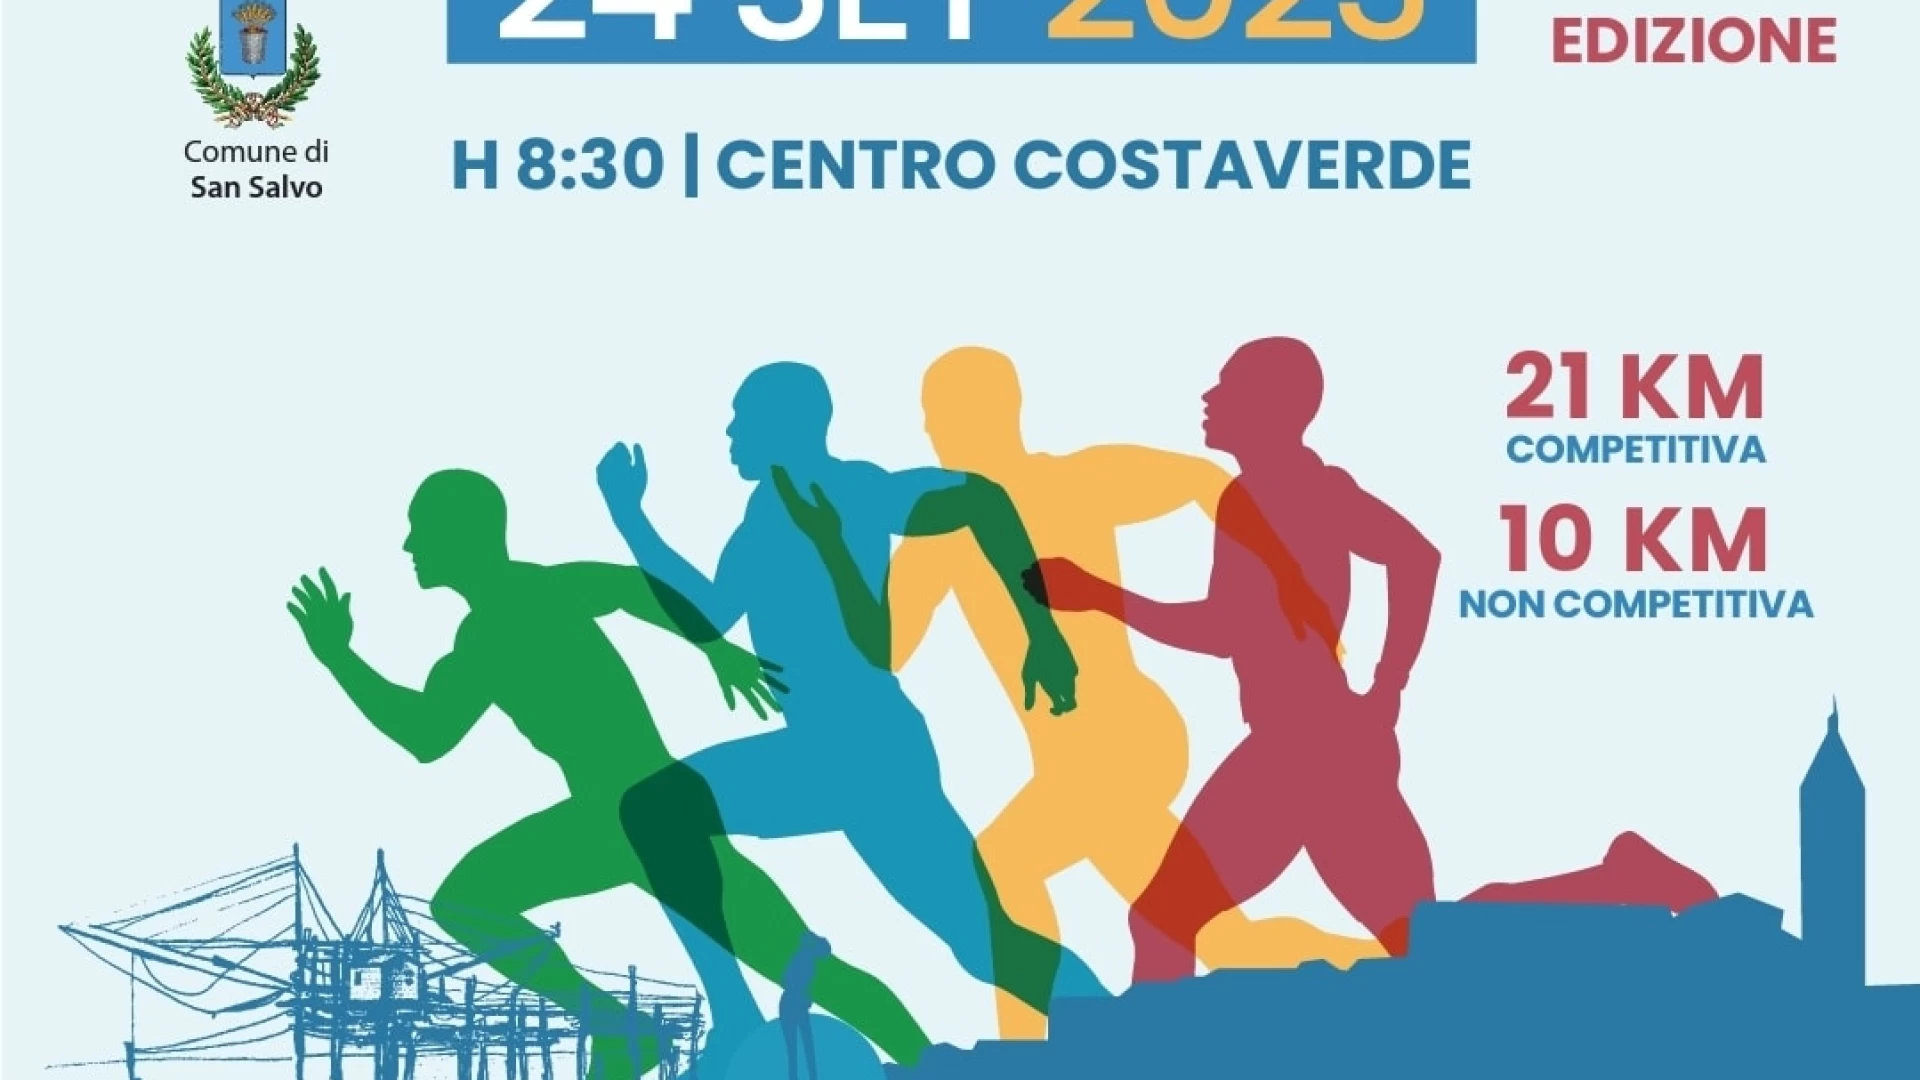 Tra Molise e Abruzzo pronta al varo la prima edizione della Mezza Maratona delle Marine